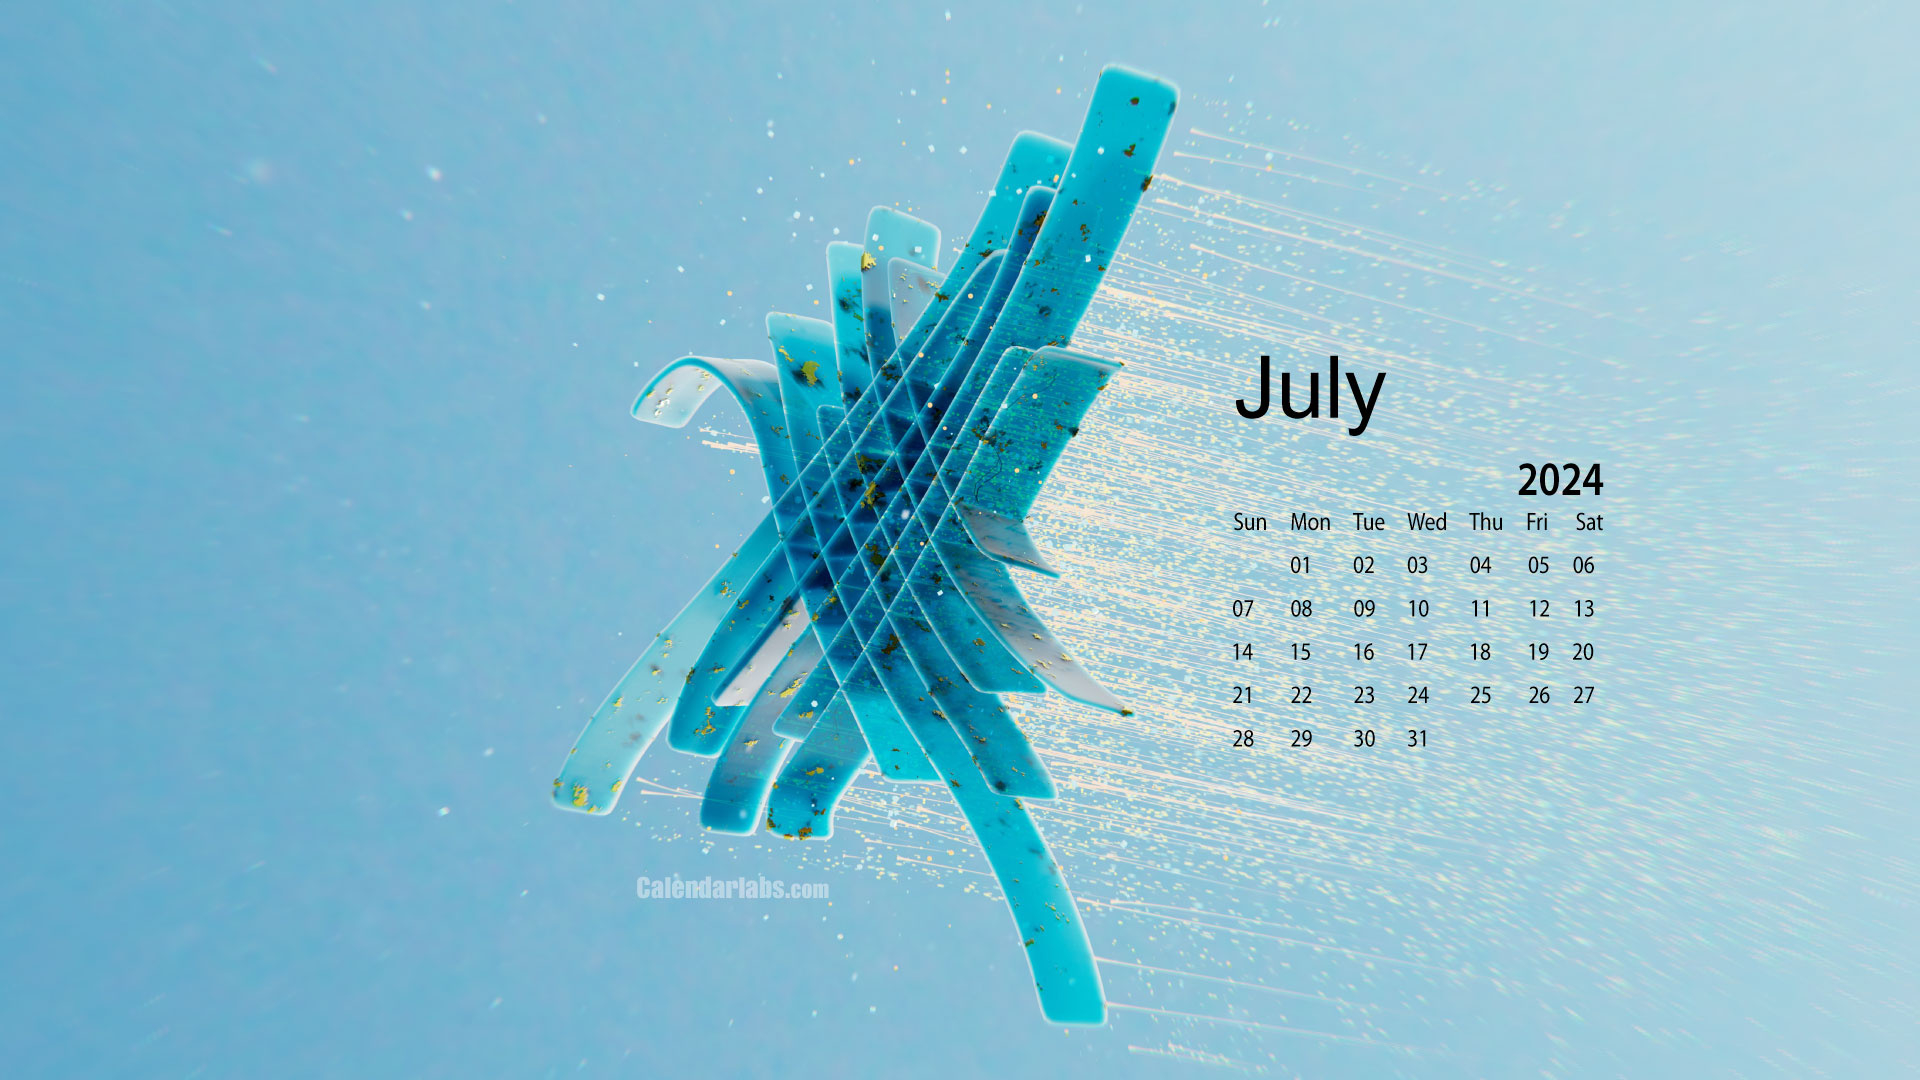 July 2024 Desktop Wallpaper Calendar - Calendarlabs regarding July 2024 Wallpaper Calendar